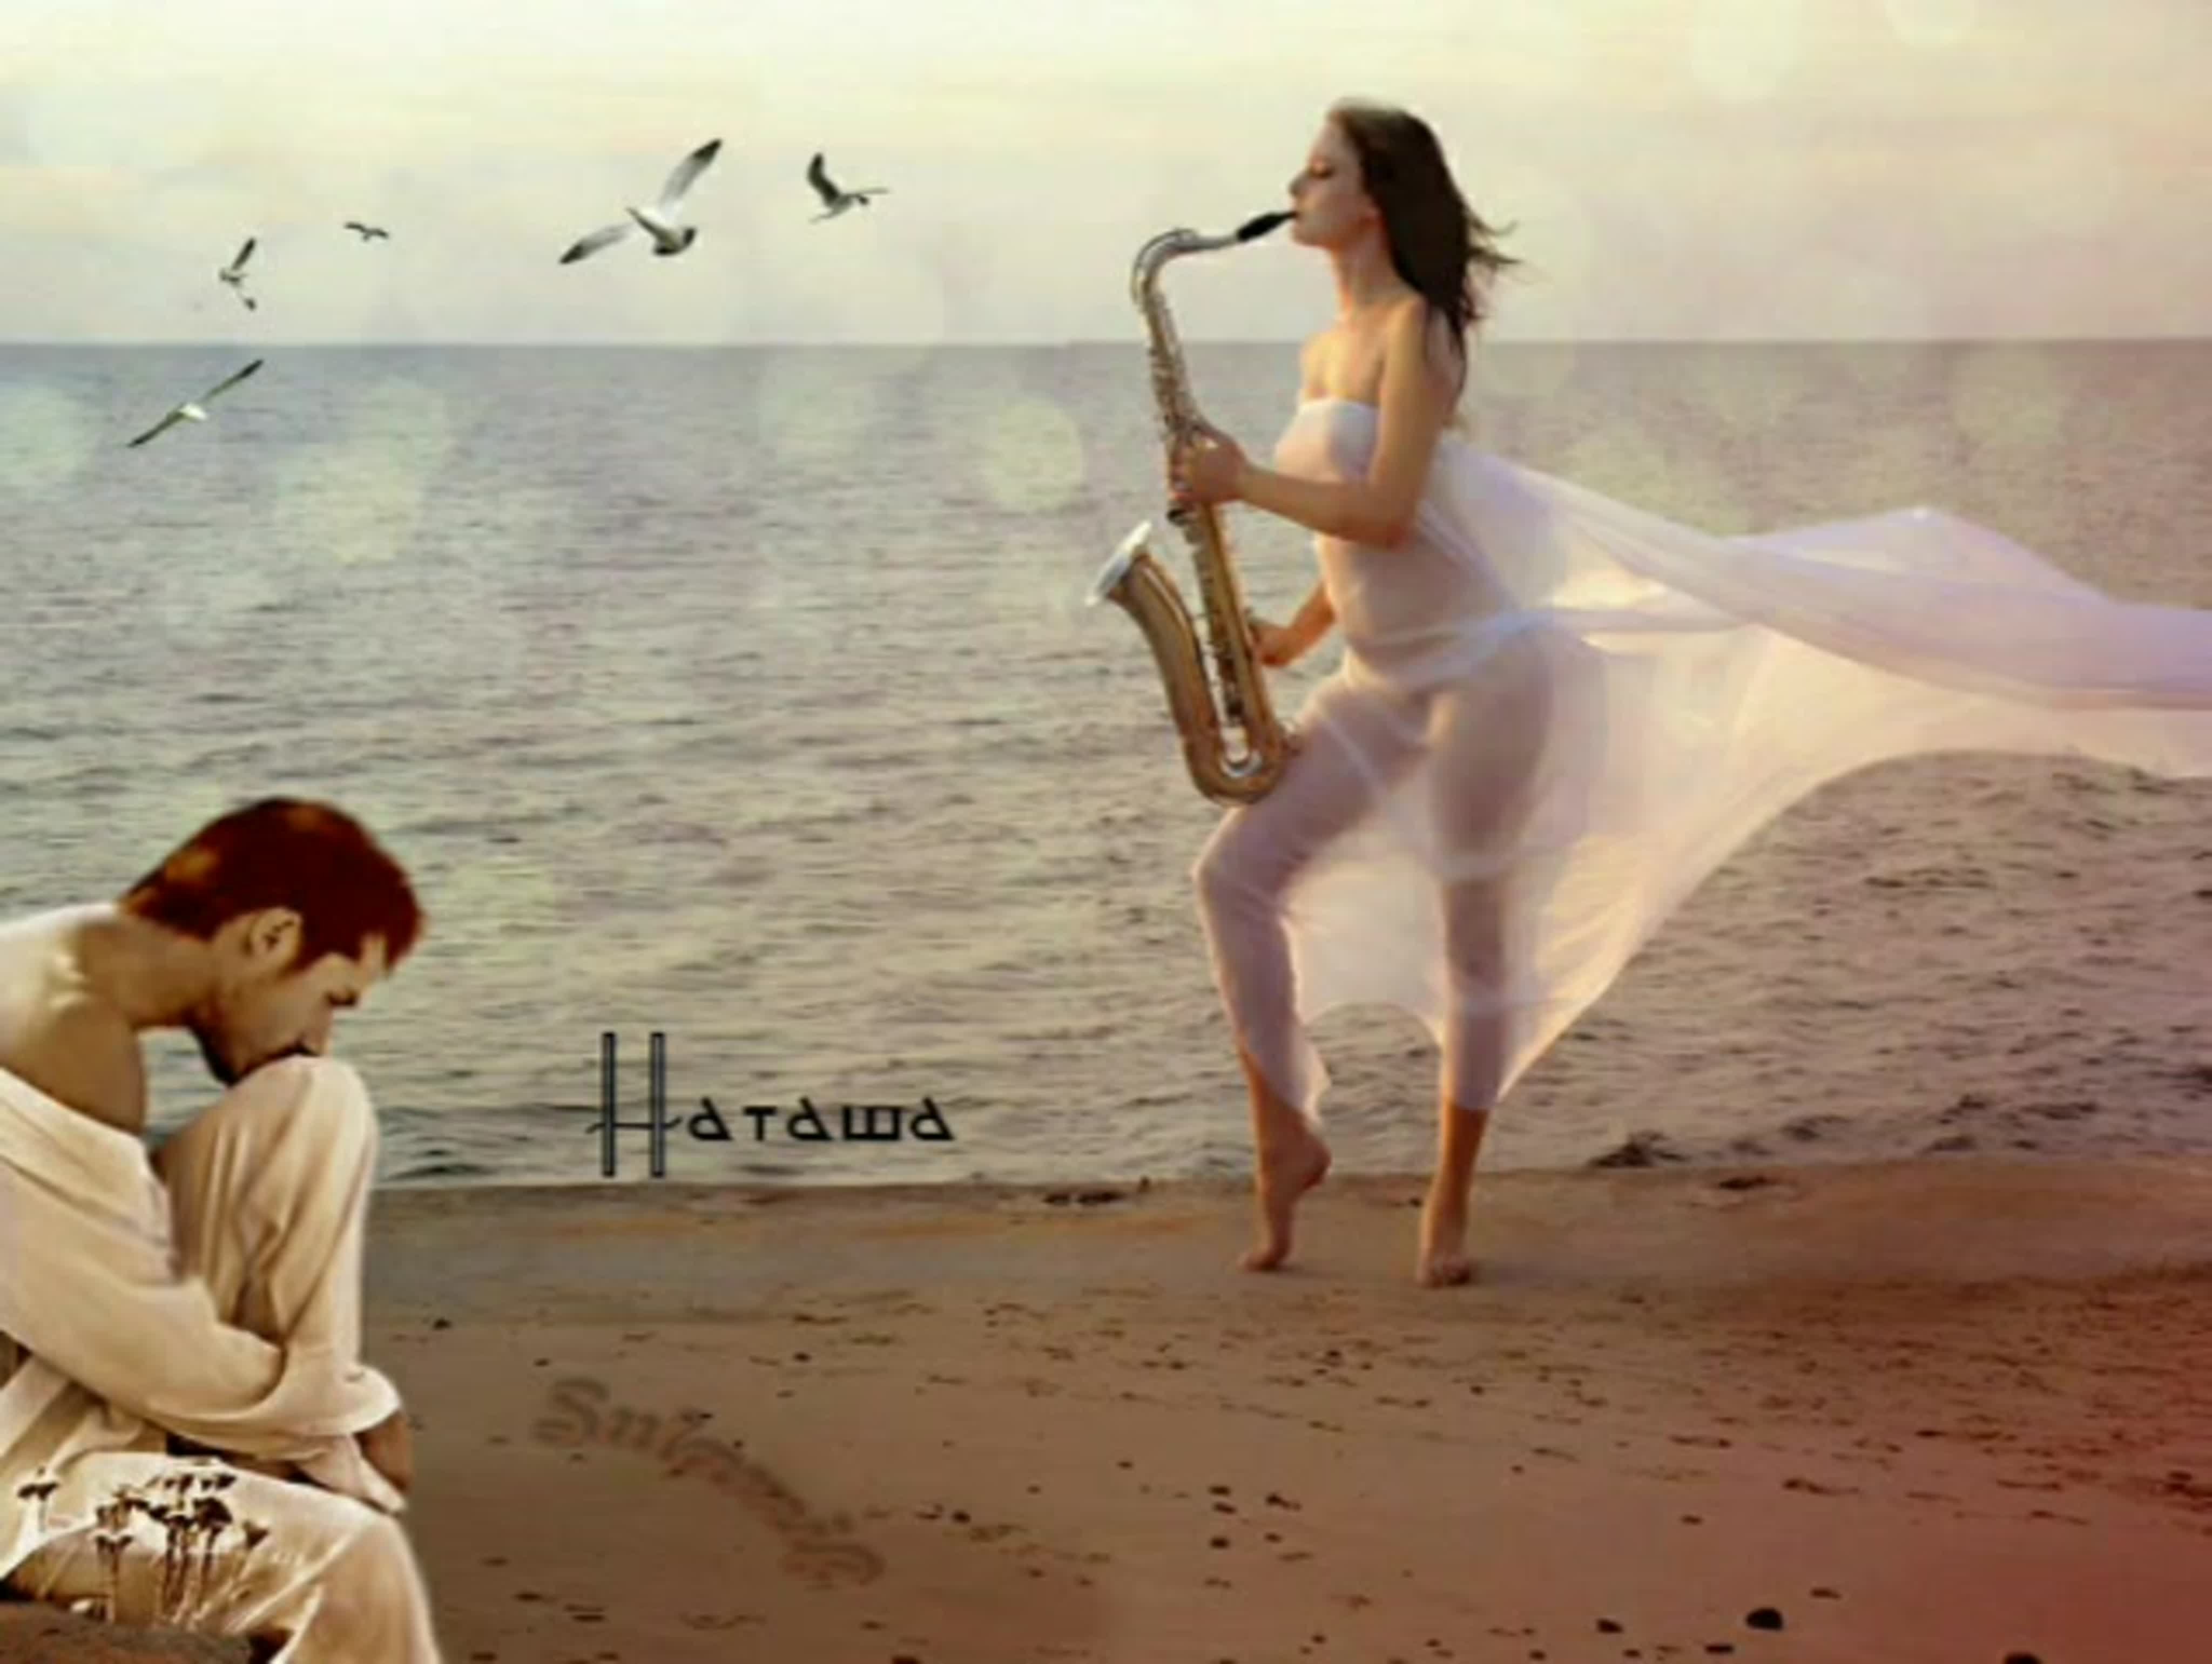 Слушать музыку можно я с тобой. Душа поет. Девушка с саксофоном на берегу моря. Романтические воспоминания. Романтический саксофон.